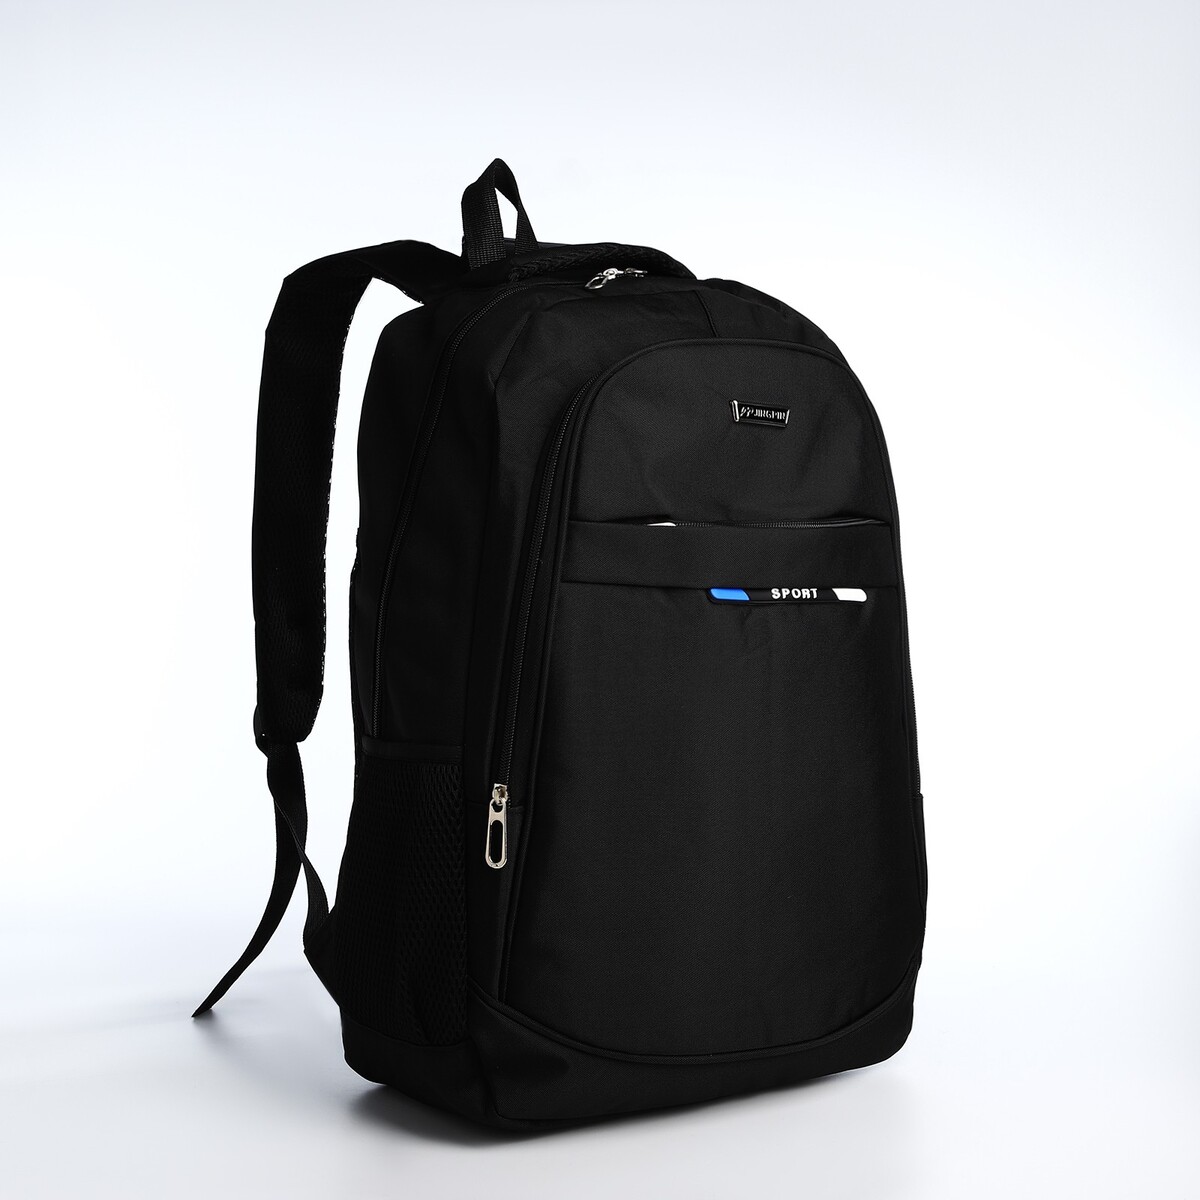 Рюкзак молодежный из текстиля на молнии, 4 кармана, цвет черный/синий